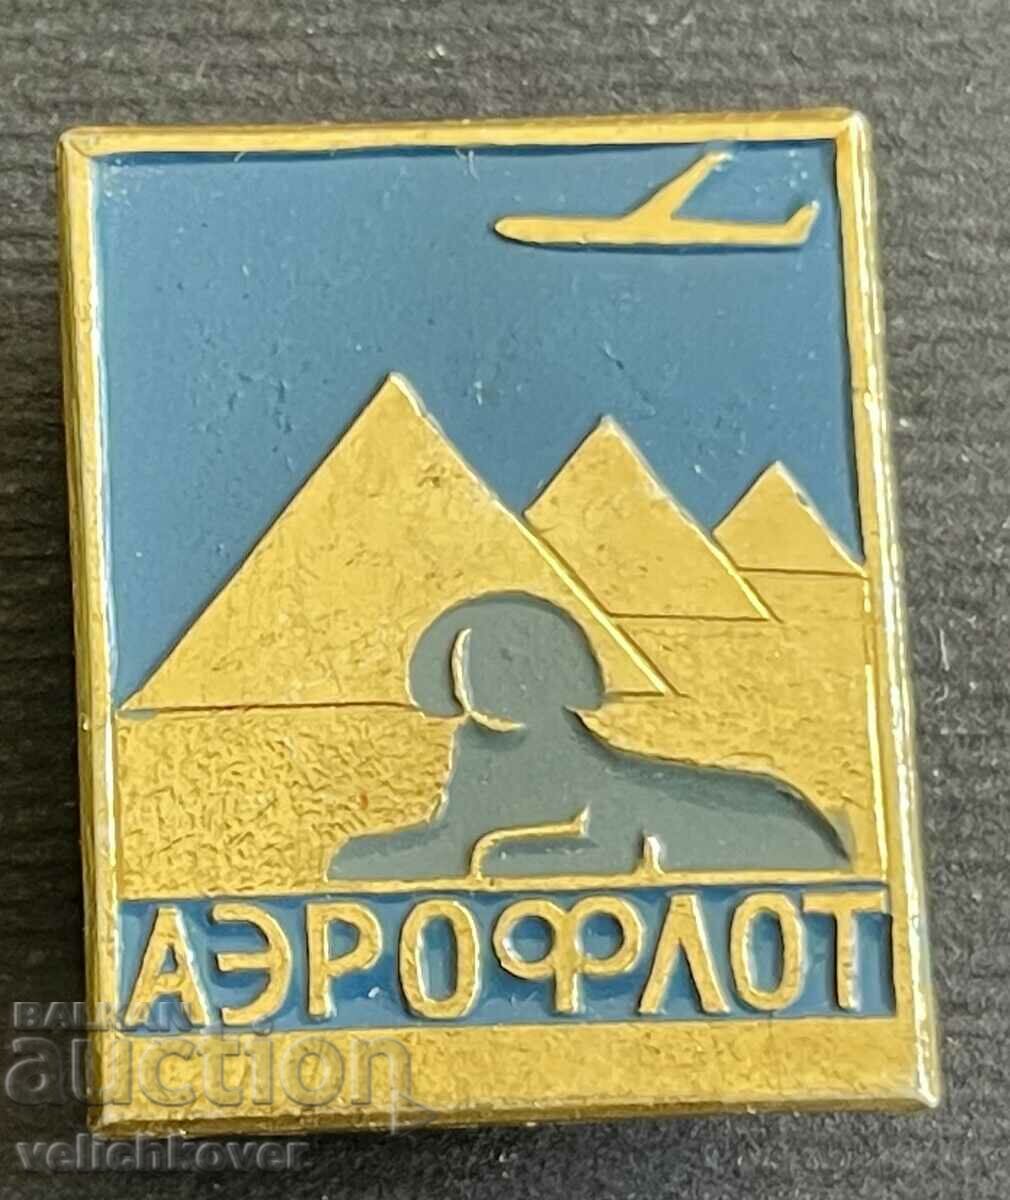 35565 Reprezentanța companiei aeriene URSS Aeroflot Egipt